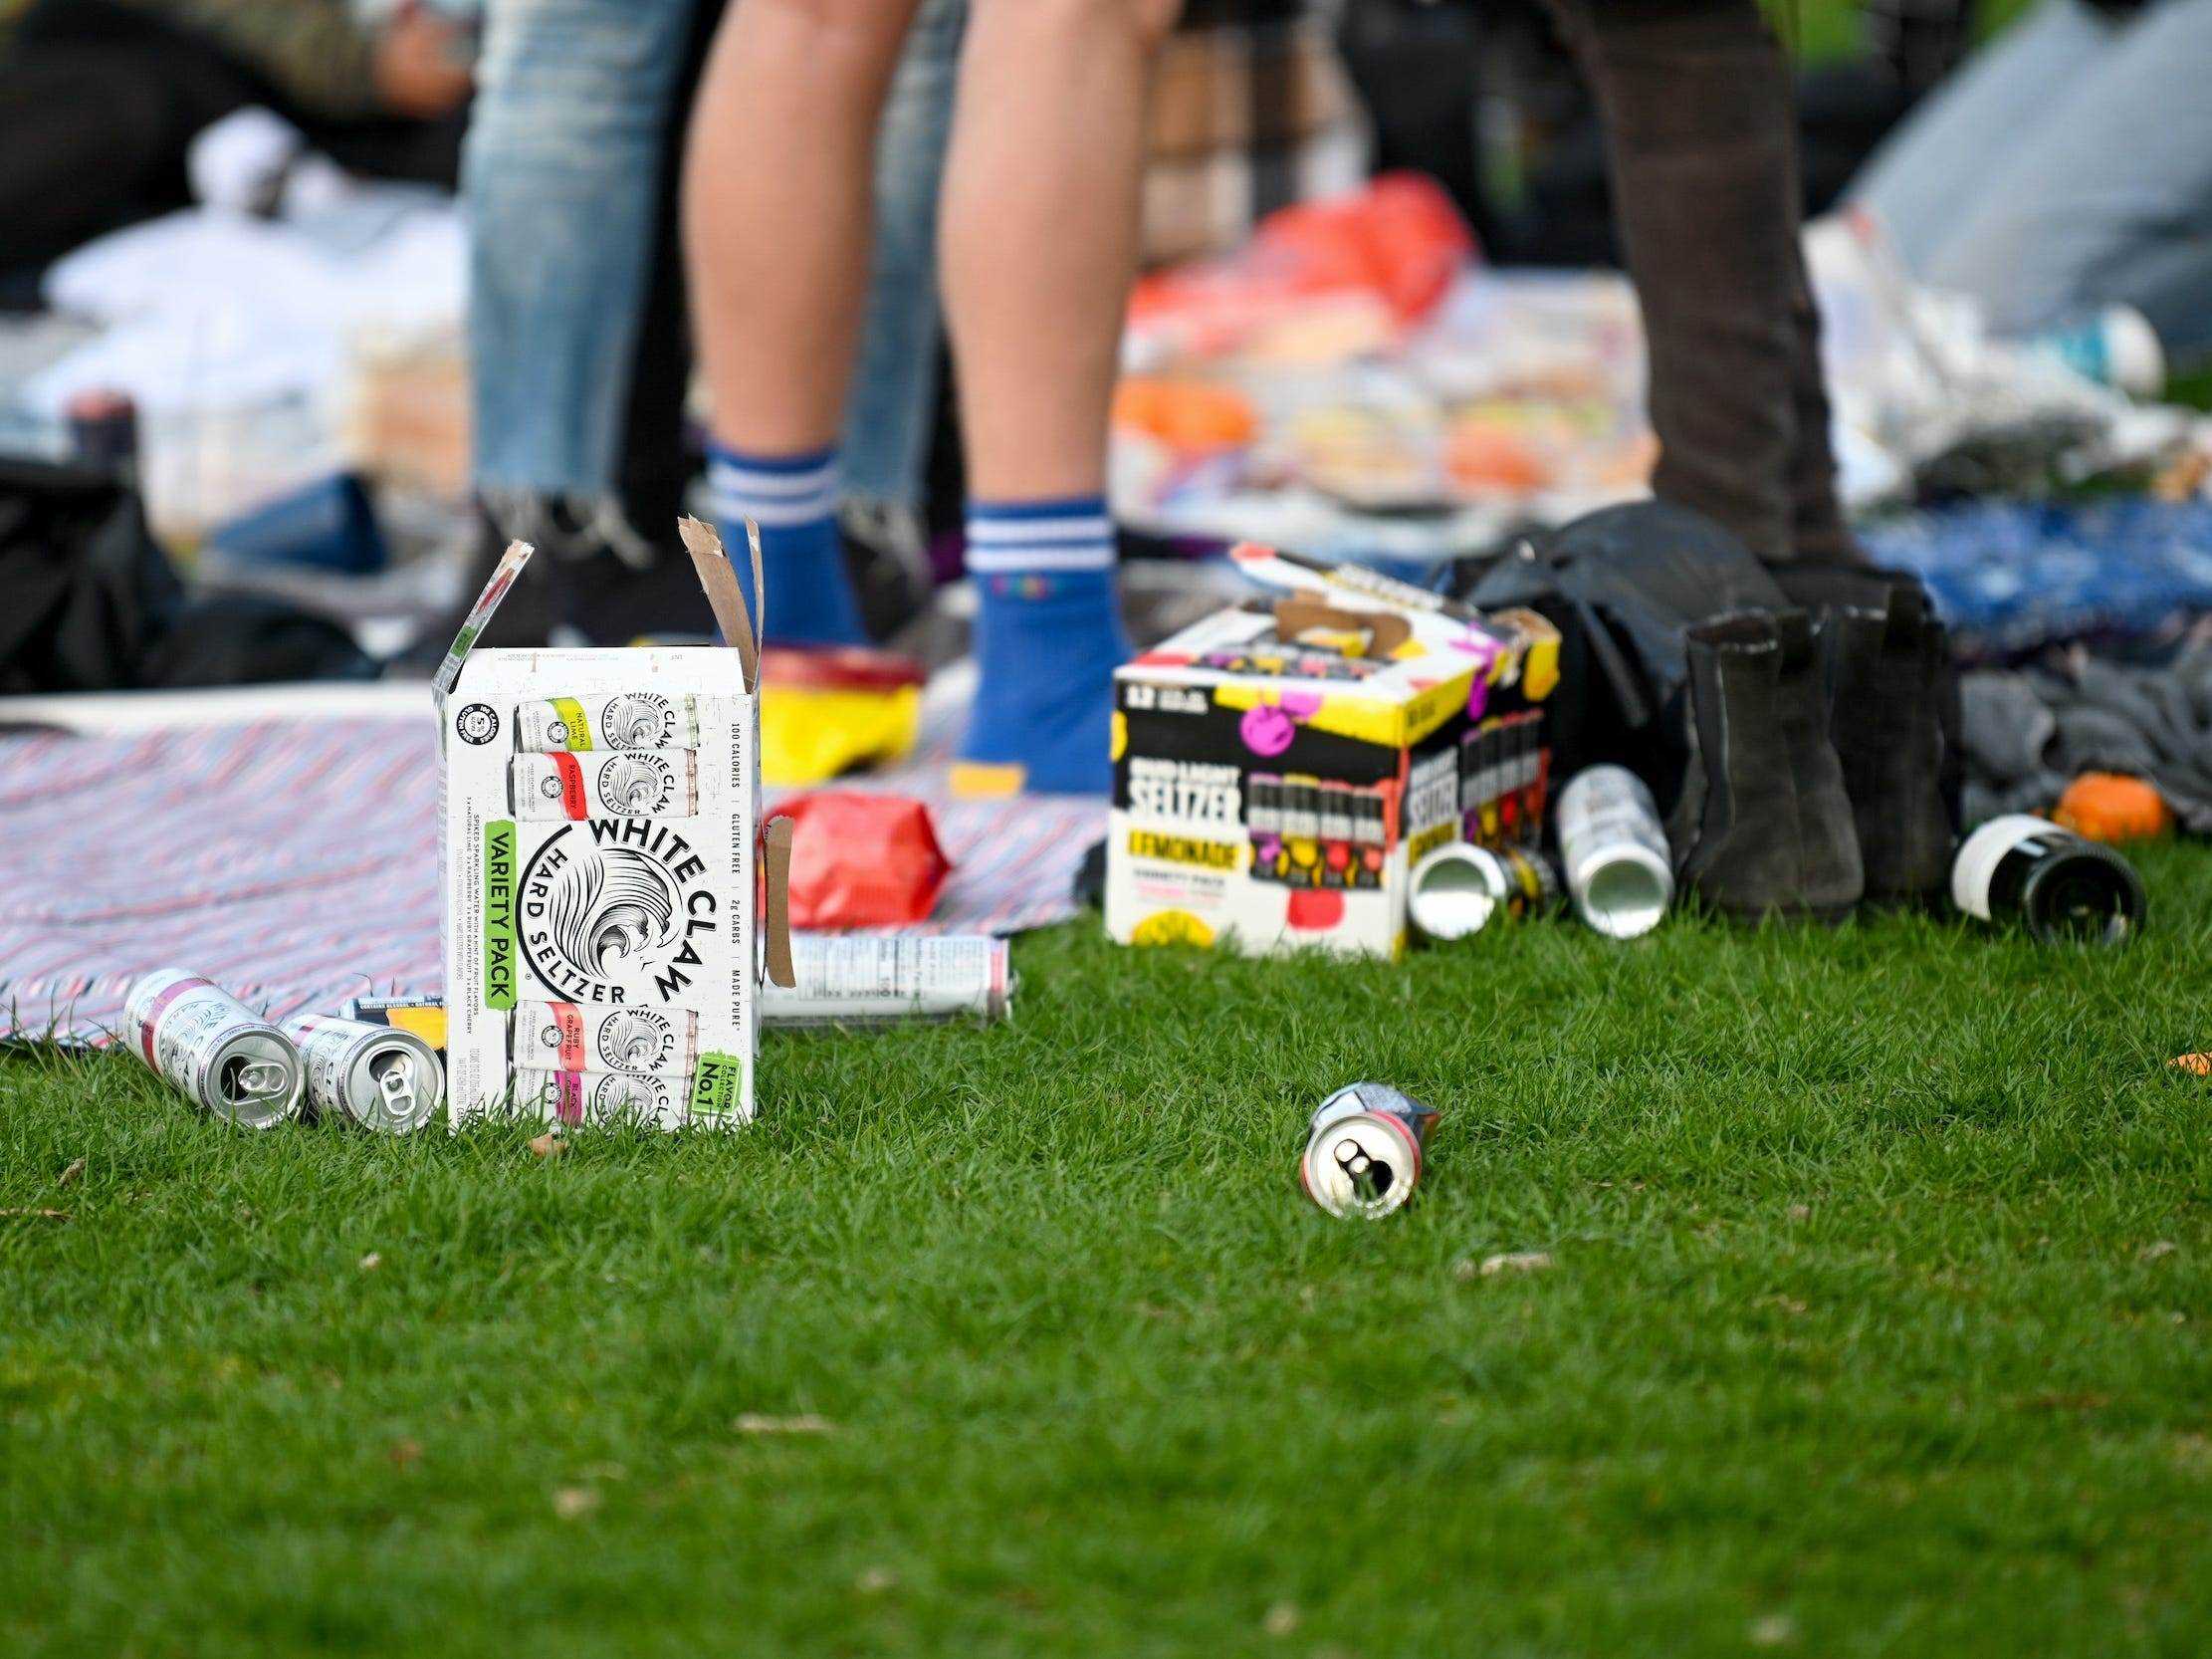 Leere White Claw und Bud Light Seltzer Dosen auf dem Boden im Central Park während des Picknicks